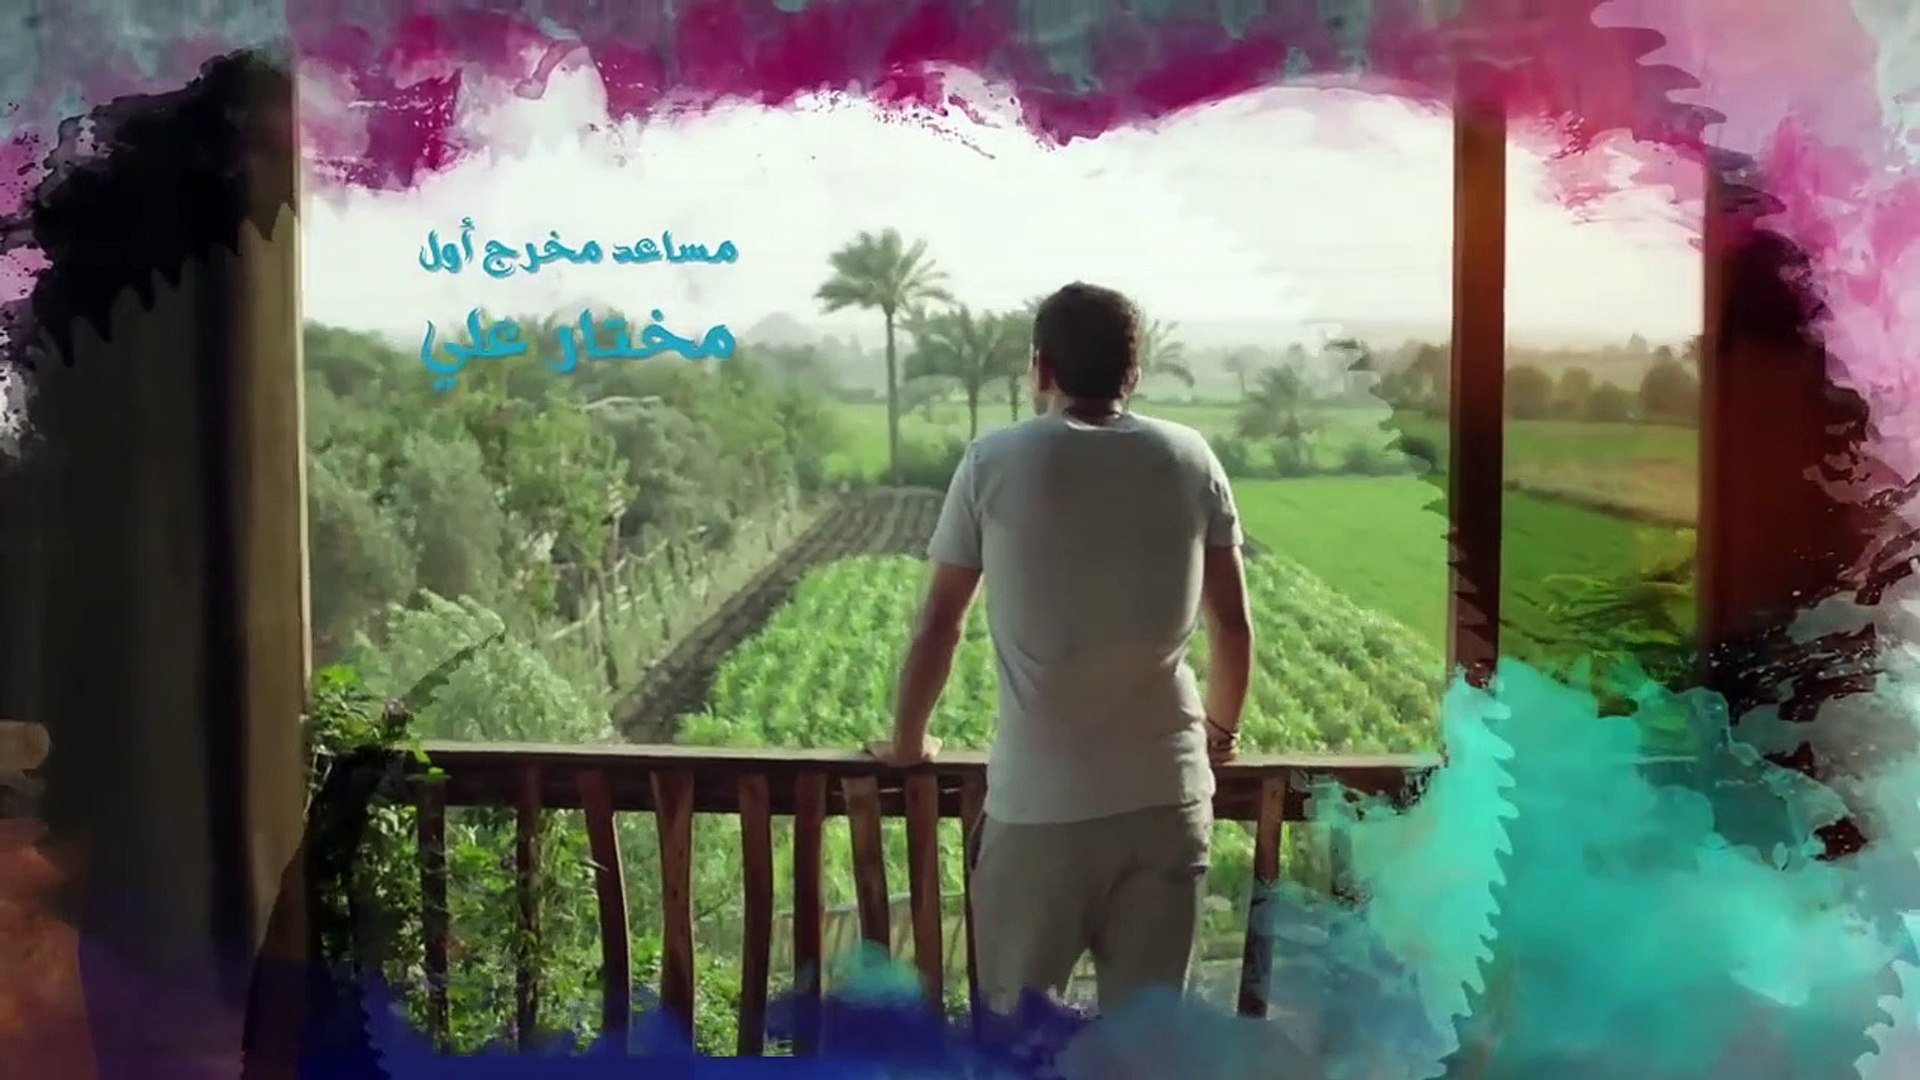 الحلقة الرابعة - مسلسل الحرباية | Episode 4 - Al Herbaya Series - video  Dailymotion